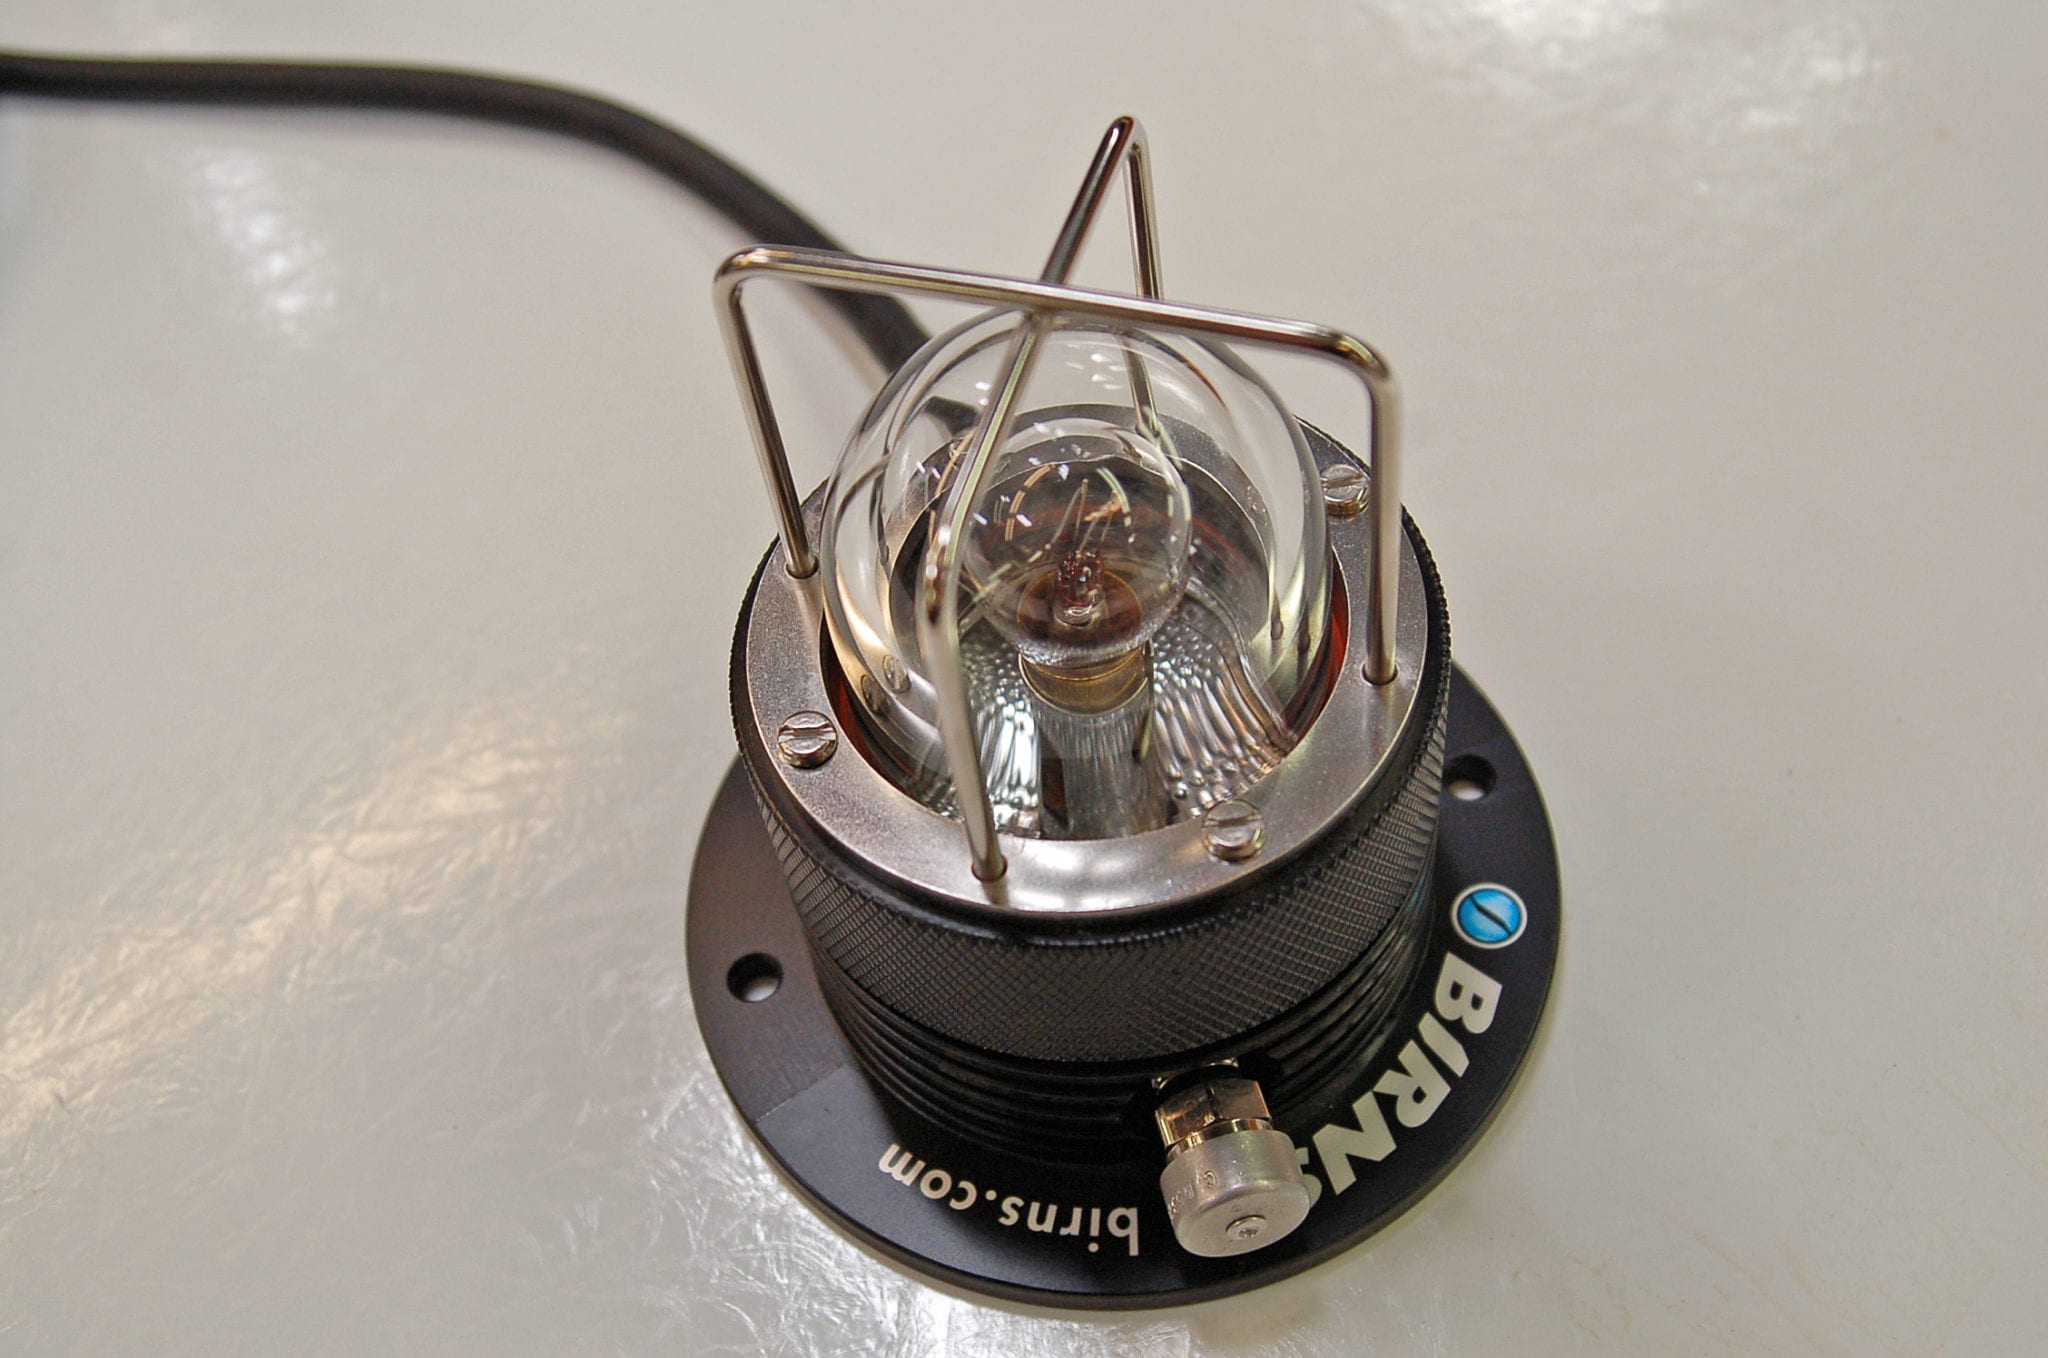 Emergency Lighting Fixture-LED - BIRNS Underwater Connectors